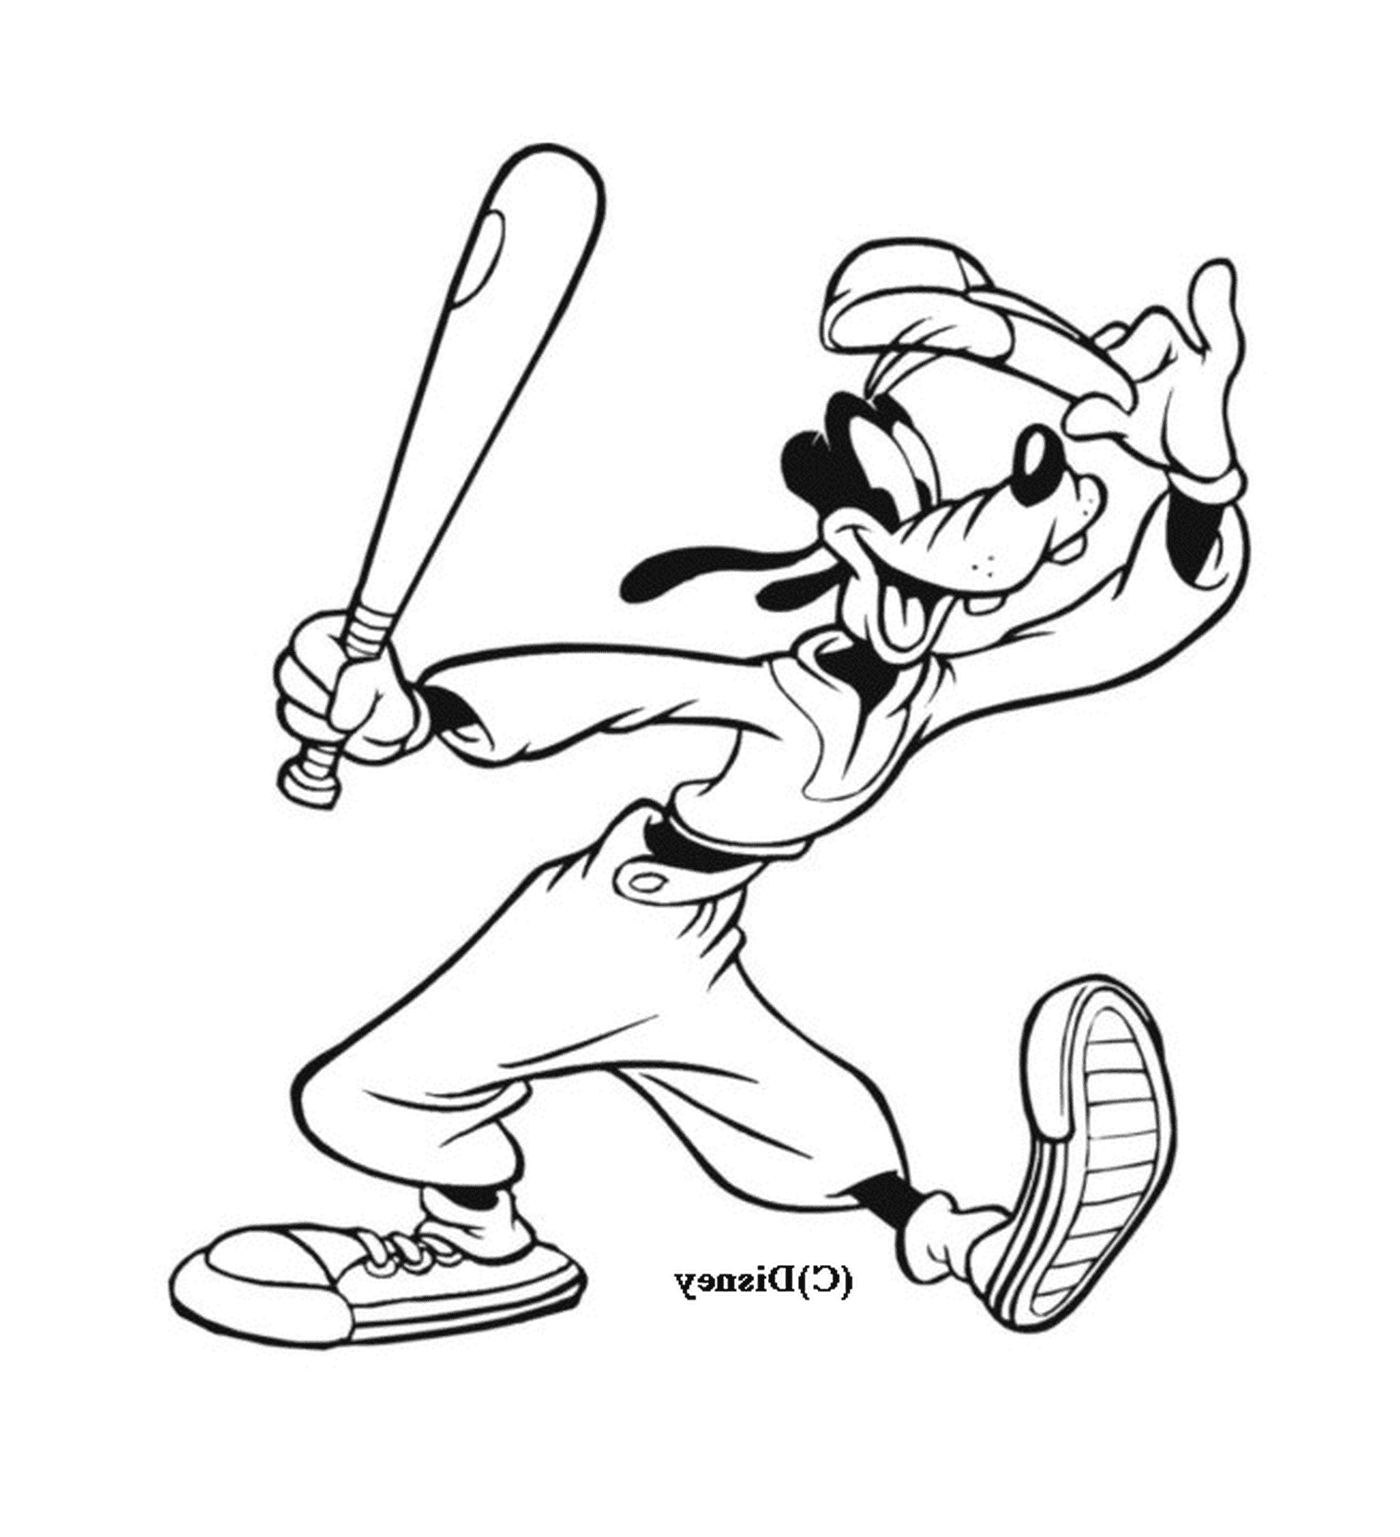  Dingo gioca a baseball con una mazza 